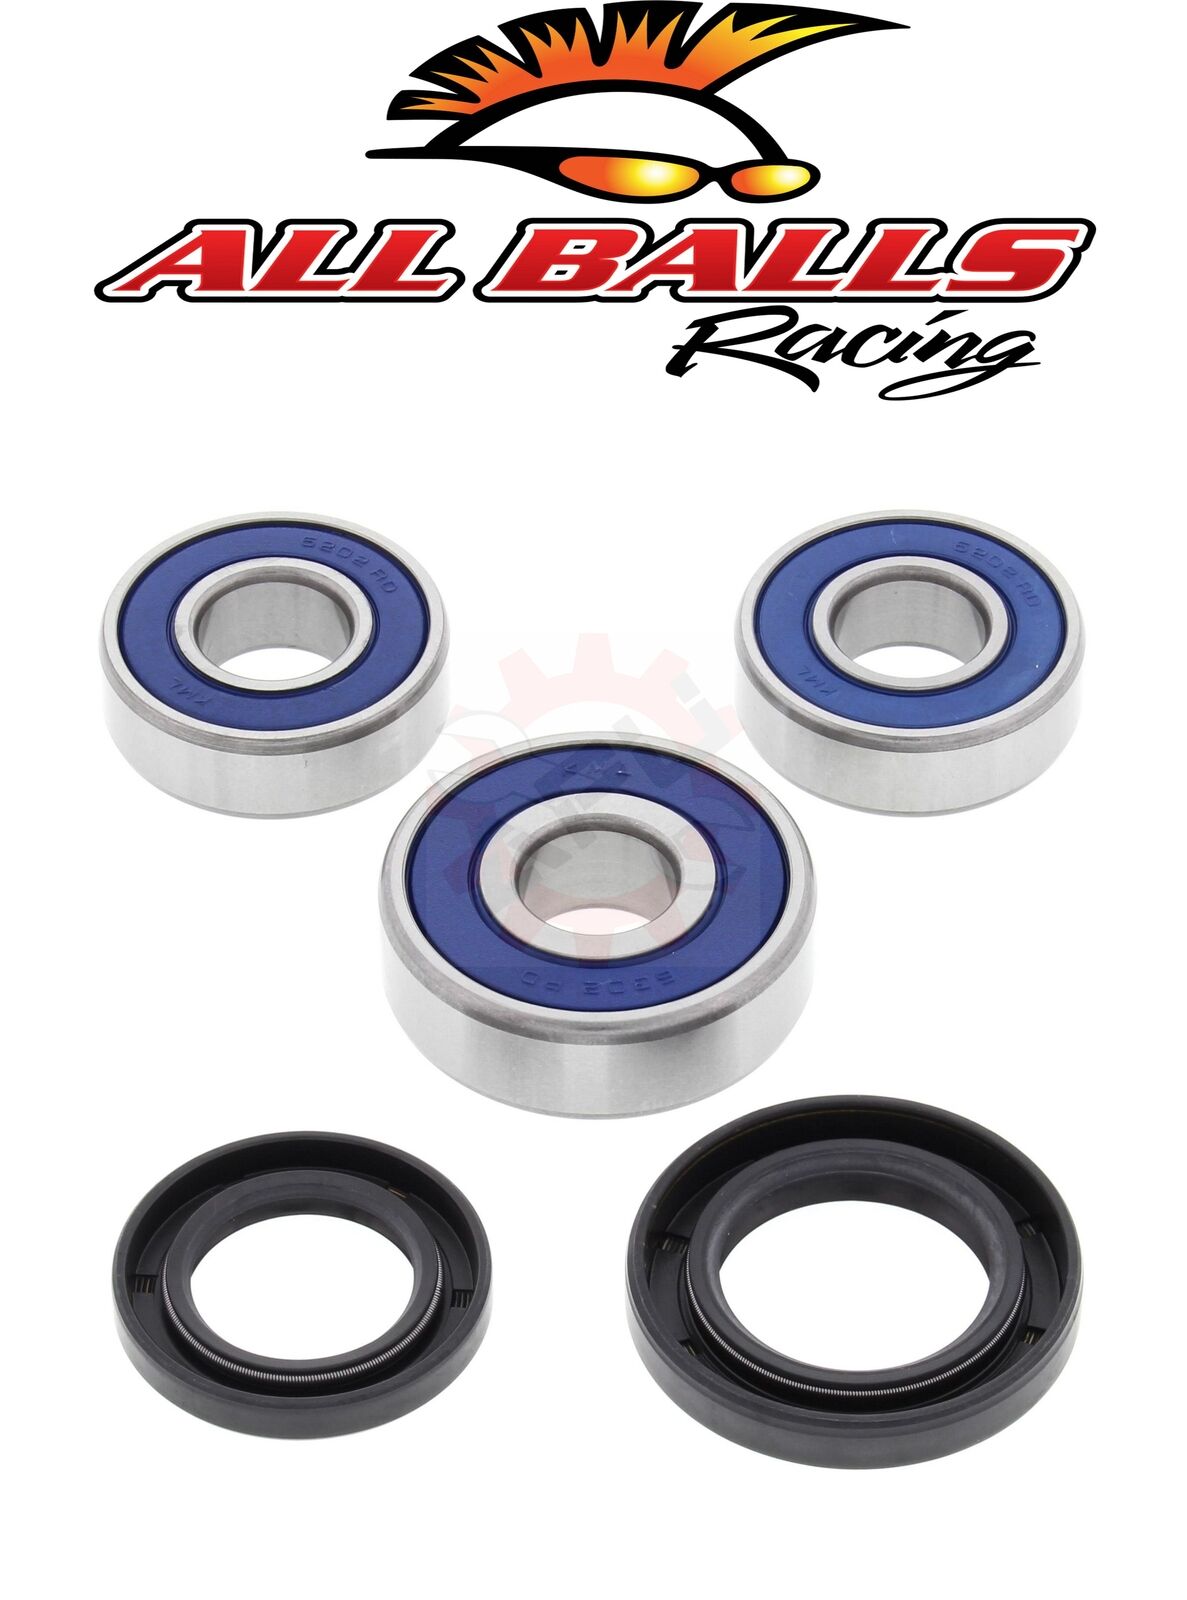 Rear Wheel Bearings TTR225 99-04 TTR230 05-17 Yamaha ALL BALLS 25-1201